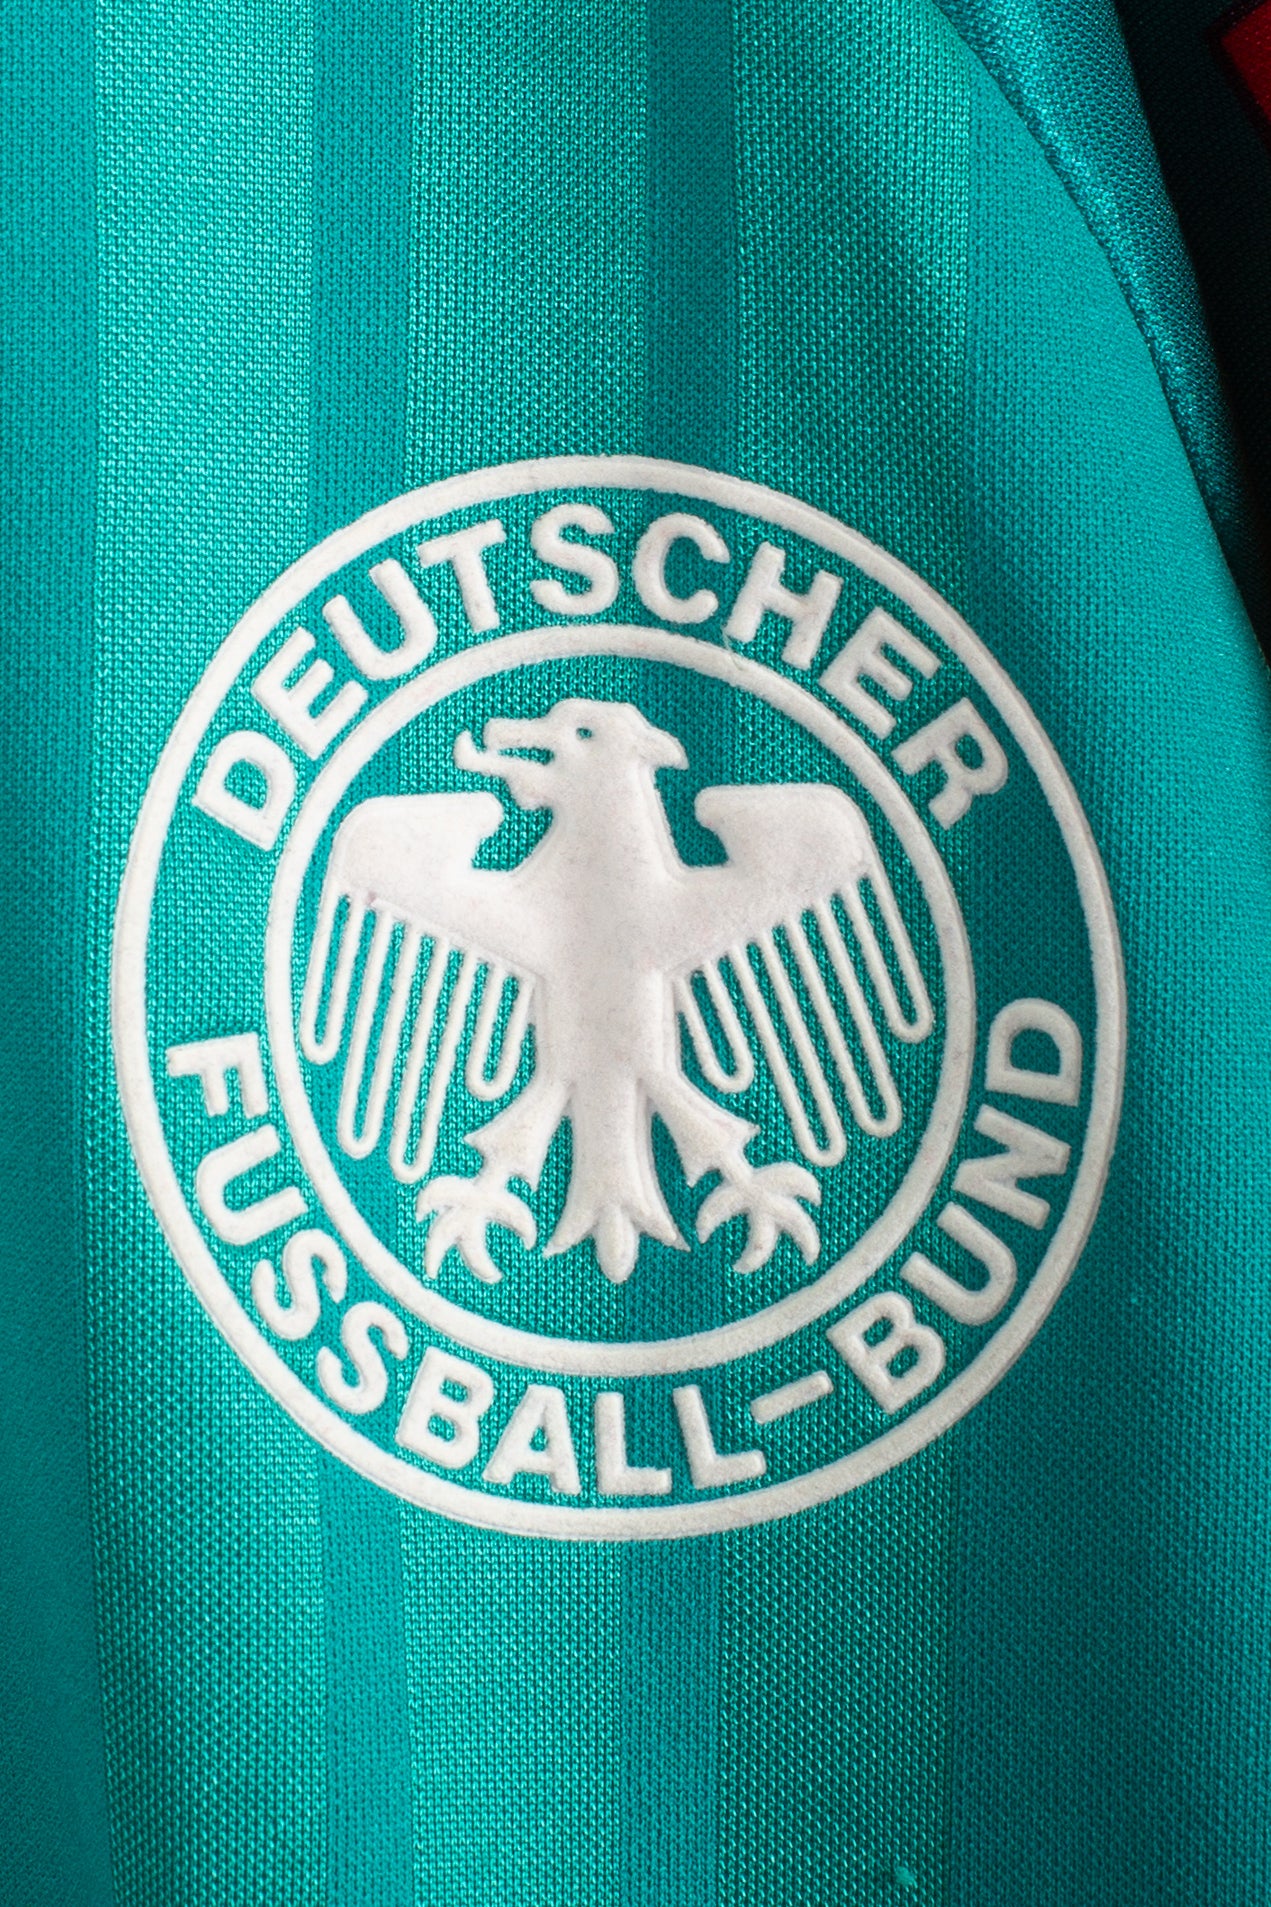 Germany 1992 Away Shirt (XL)